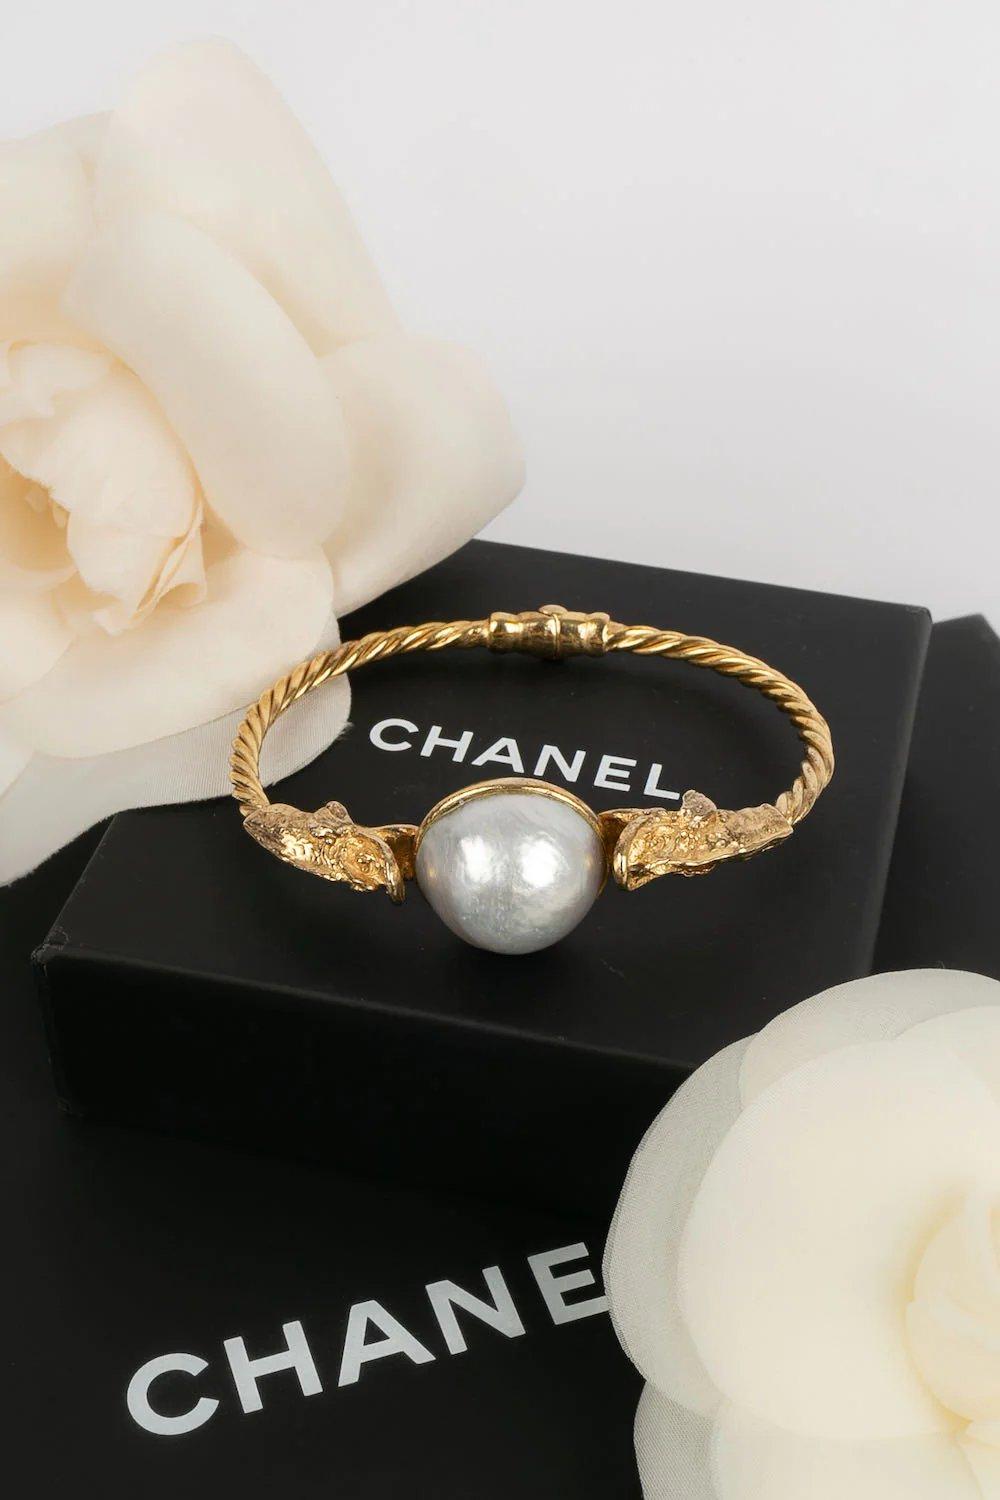 Chanel -Goldenes Metallarmband mit Perlencabochon.

Zusätzliche Informationen:
Abmessungen: Umfang: 19 cm 
Öffnung: 9 cm
Zustand: Sehr guter Zustand
Verkäufer-Referenznummer: BRAB55